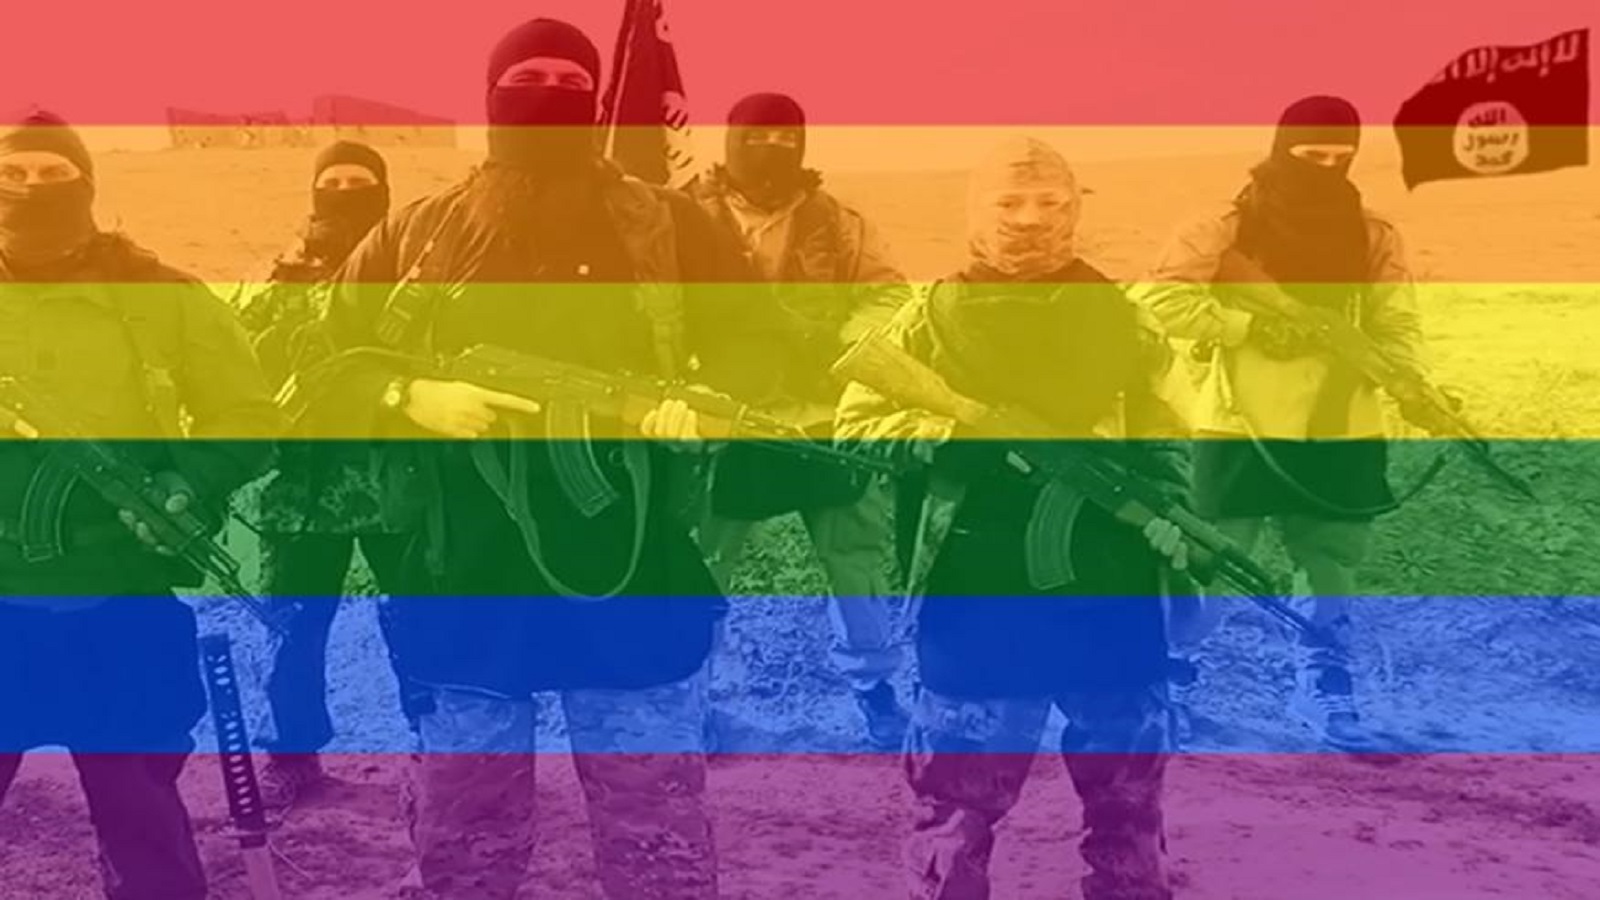 قرصان يستهدف"داعش" في "تويتر".. بالبورنوغرافيا المثلية